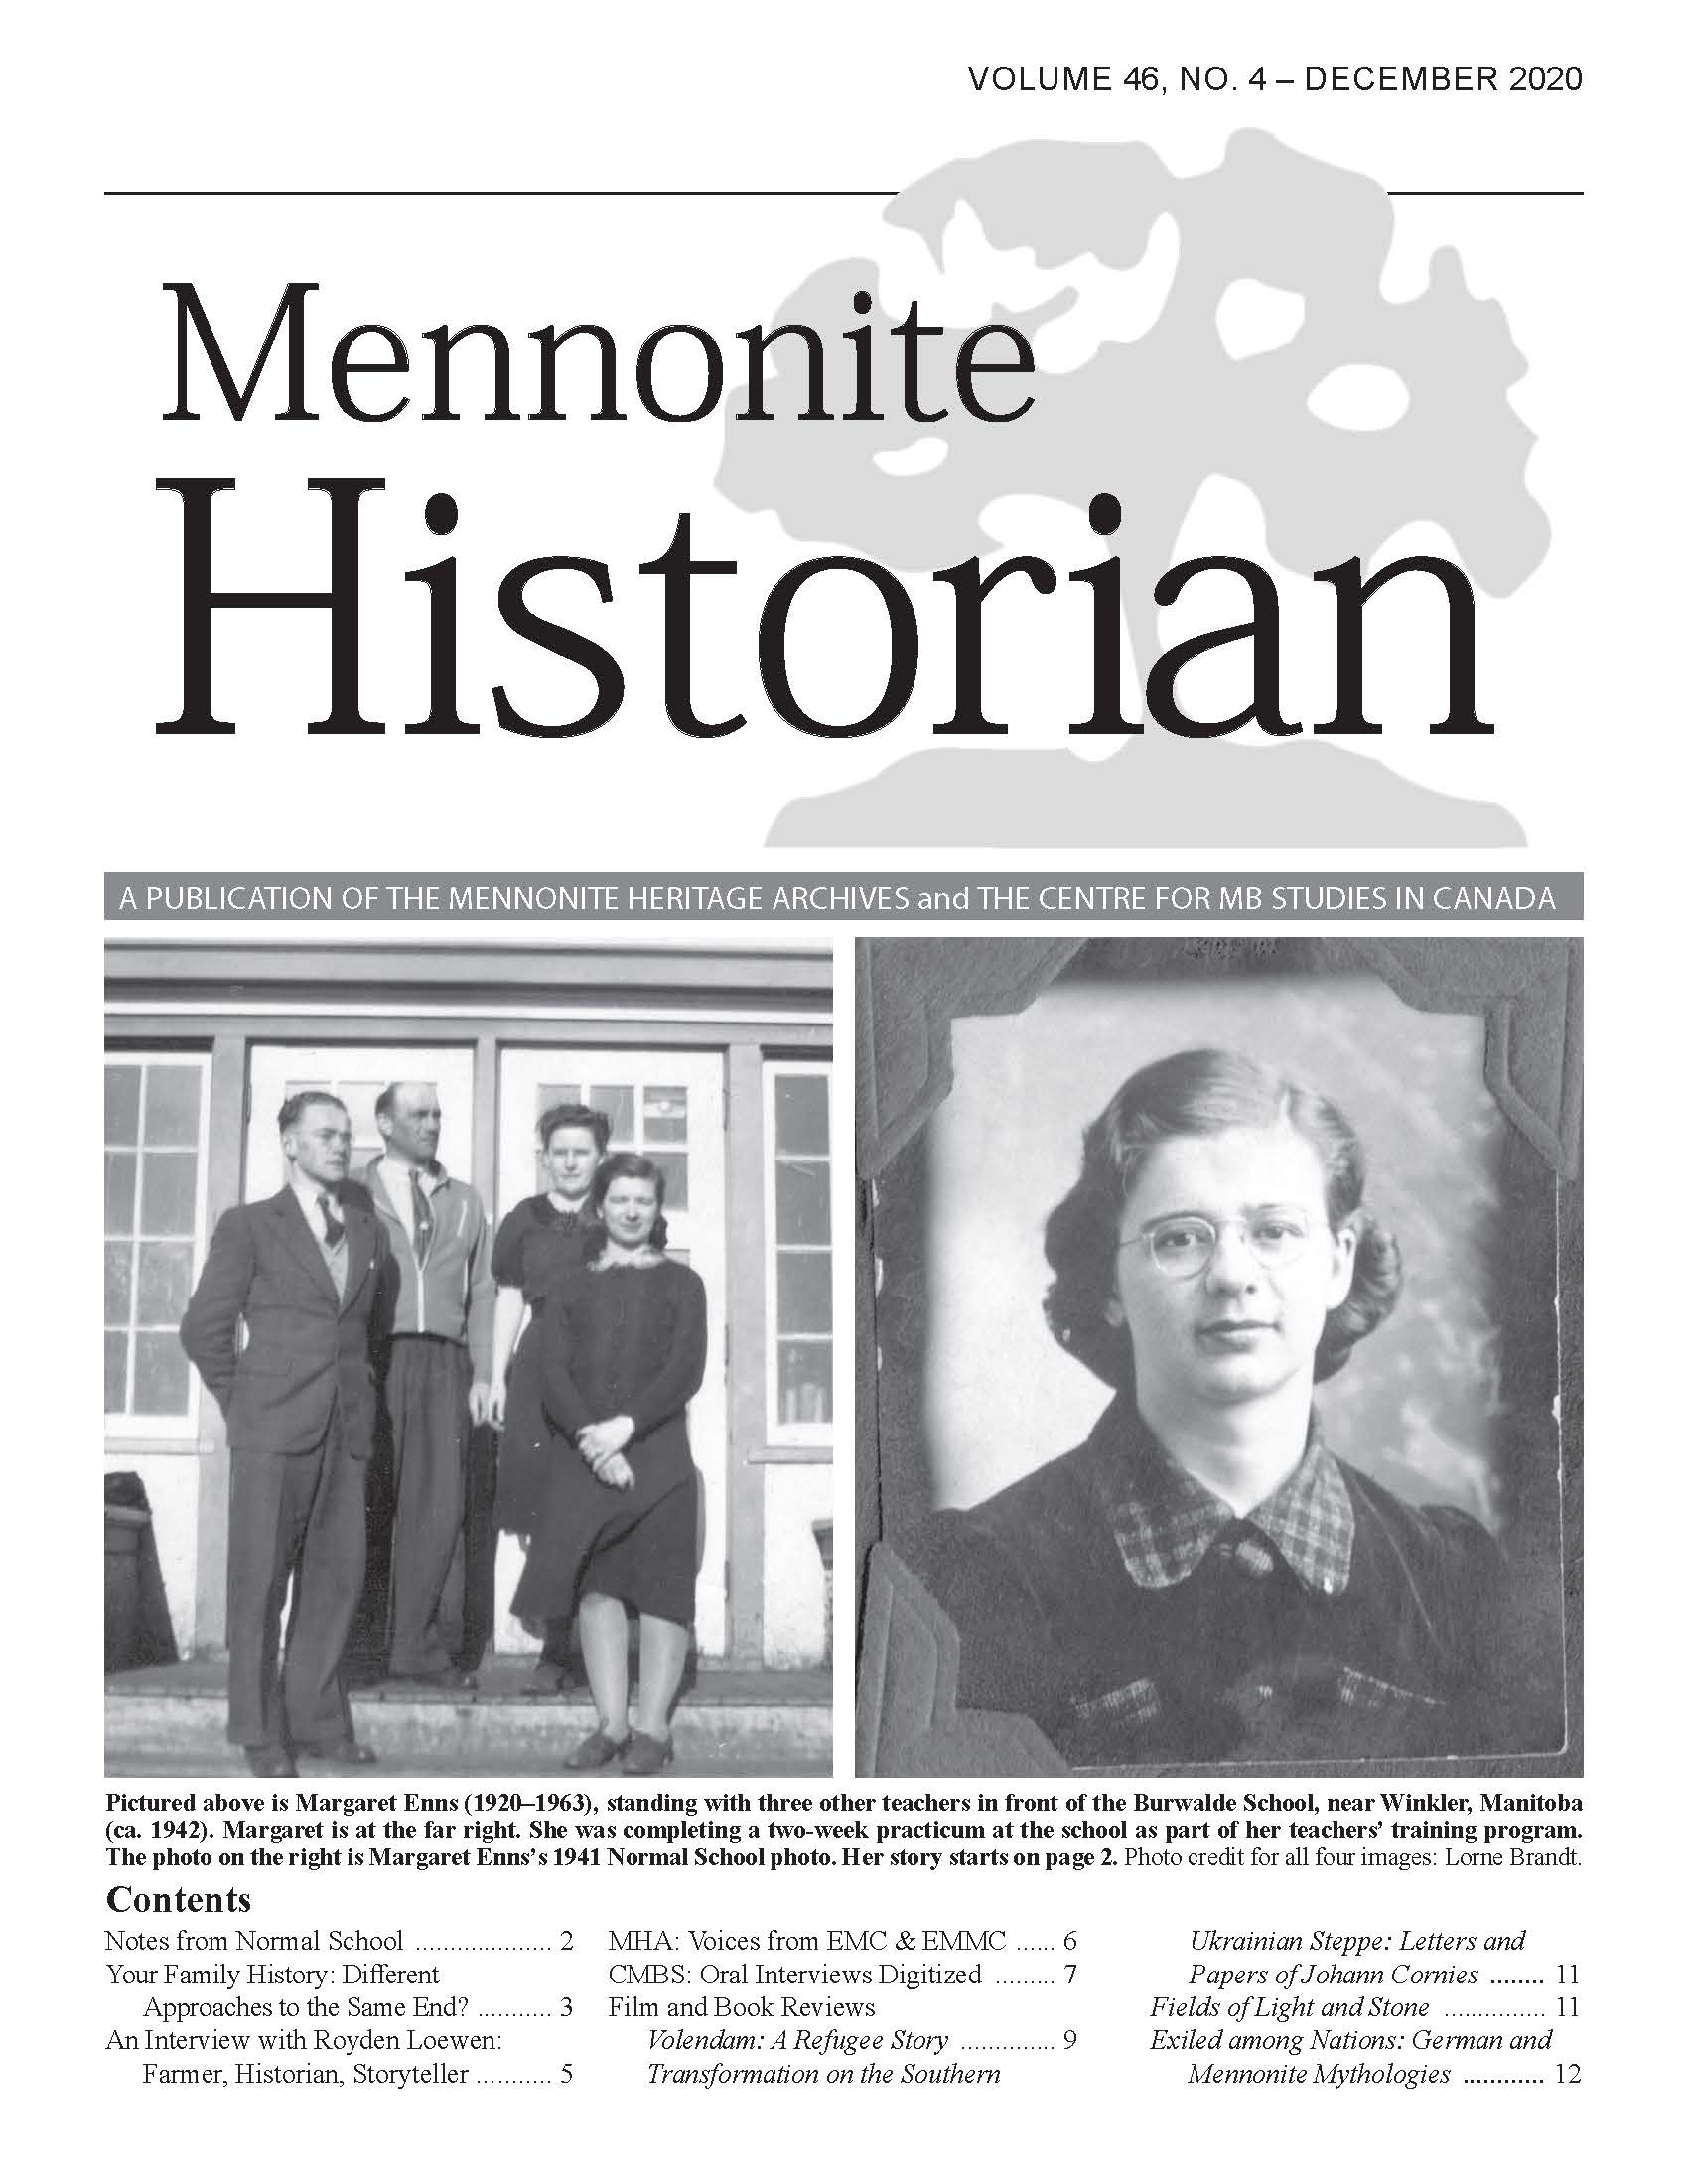 Mennonite Historian (December 2020)